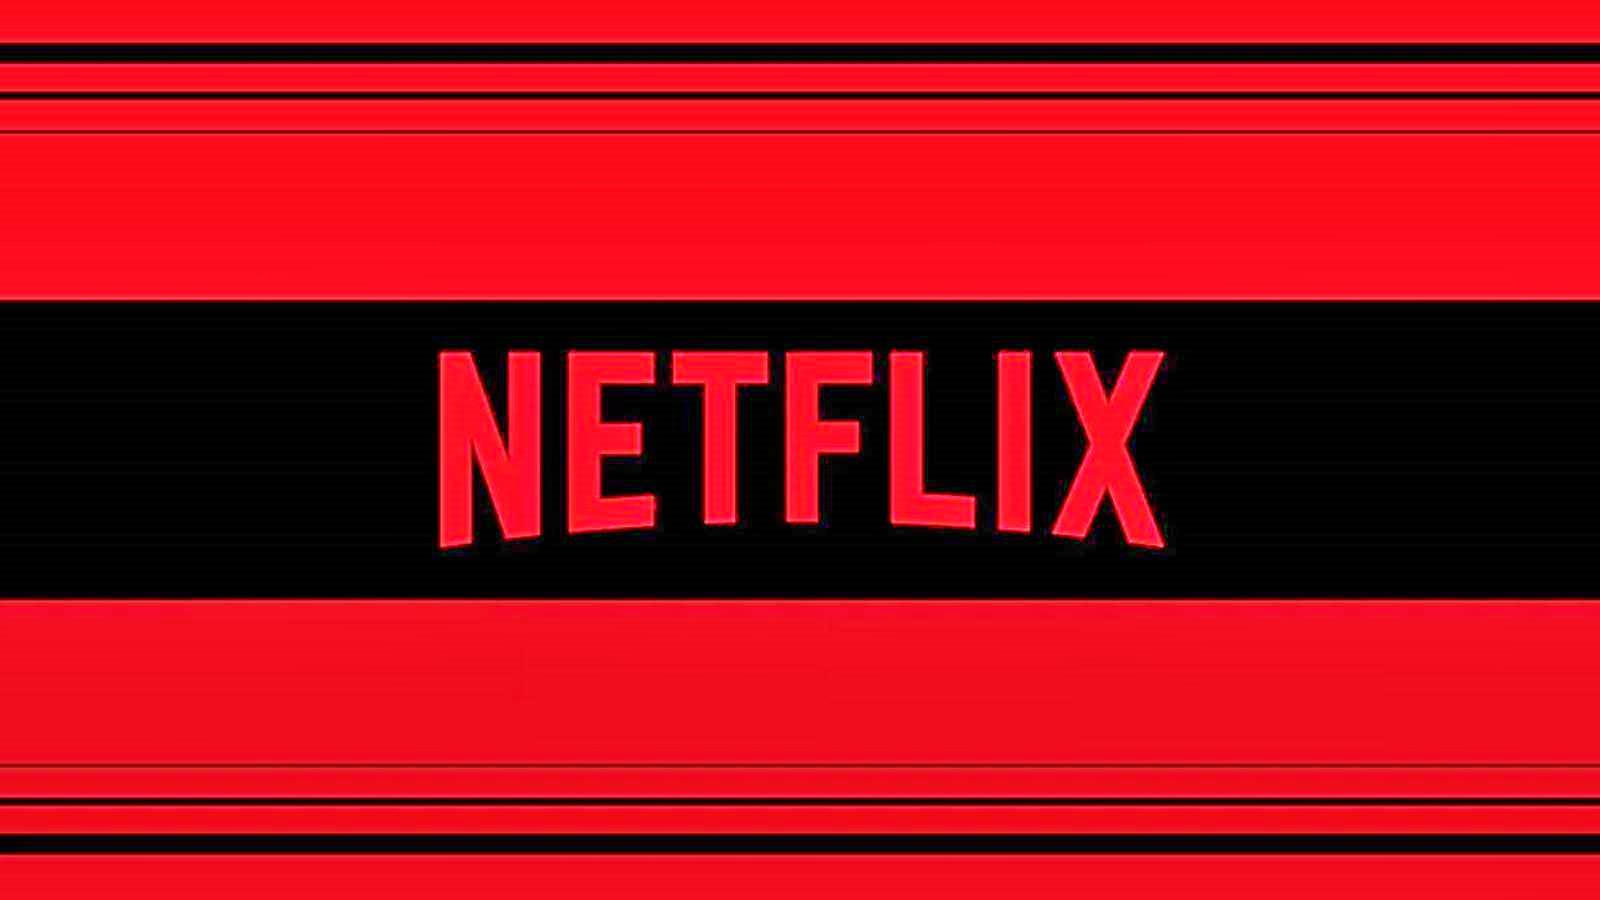 Netflix ha distribuito 12 nuove serie di film in Romania questa settimana